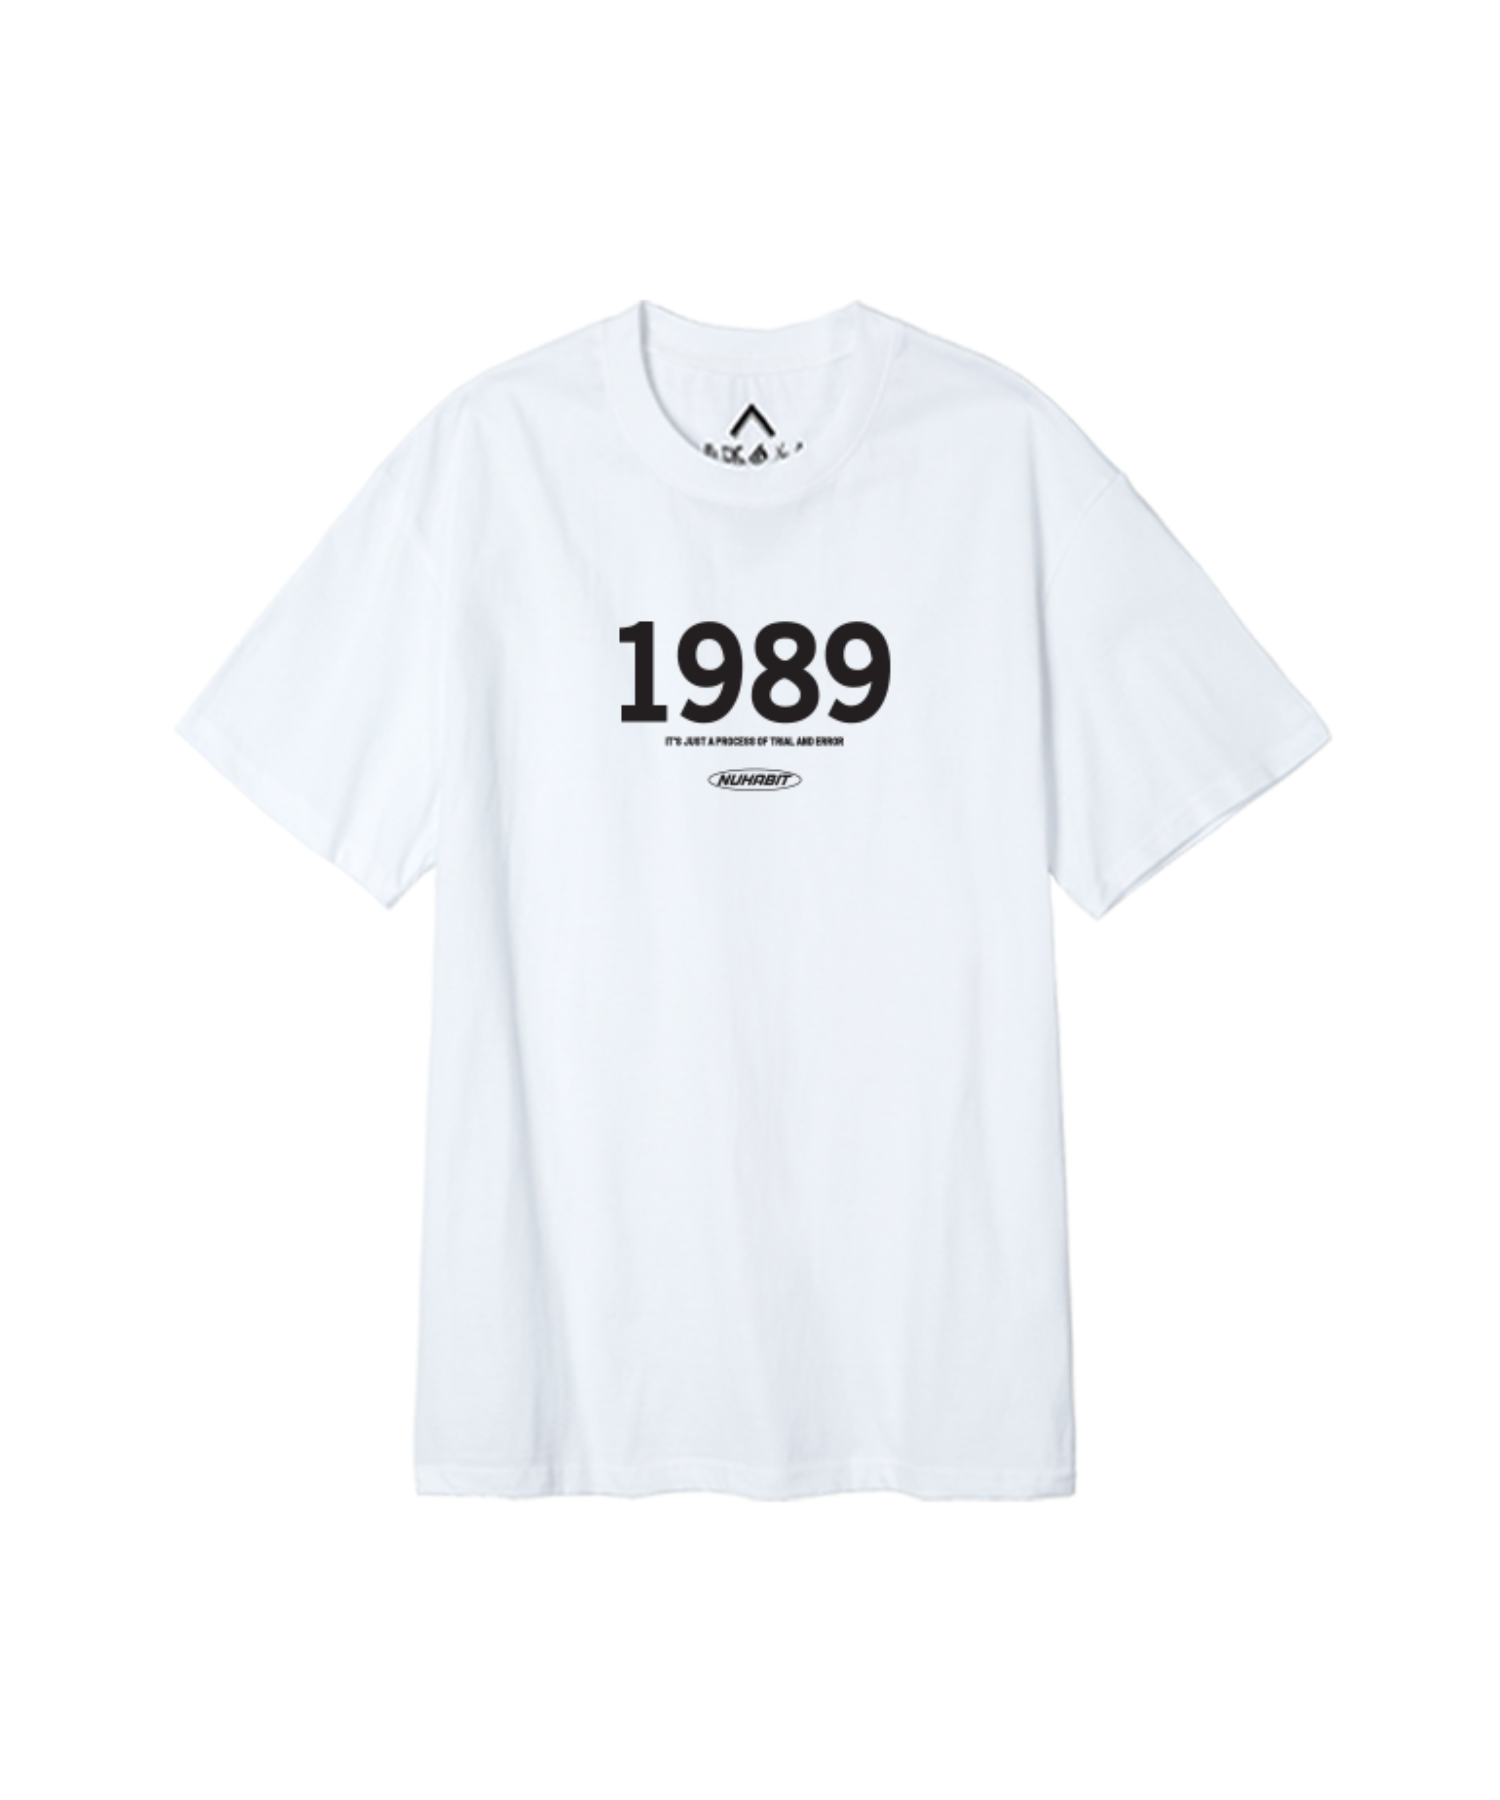 뉴해빗 1989 LOGO 반팔 (SBS9S-7098)